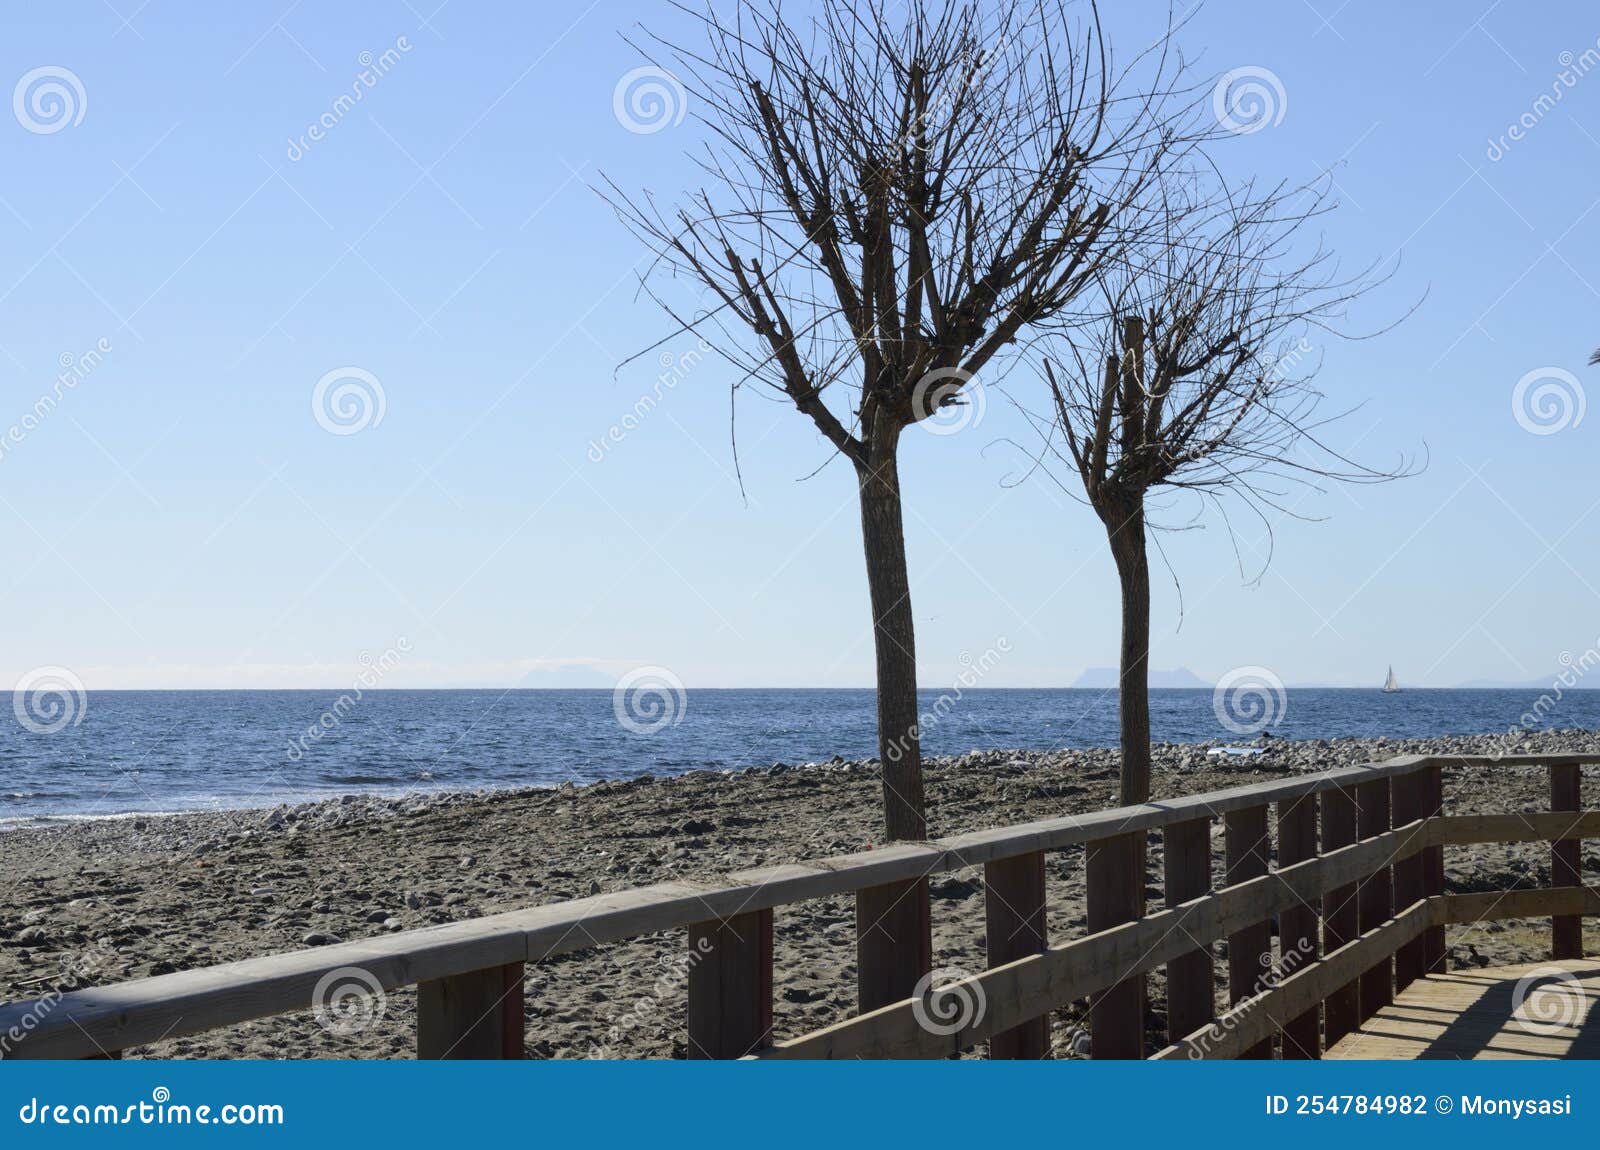 autumn trees next to litoral path